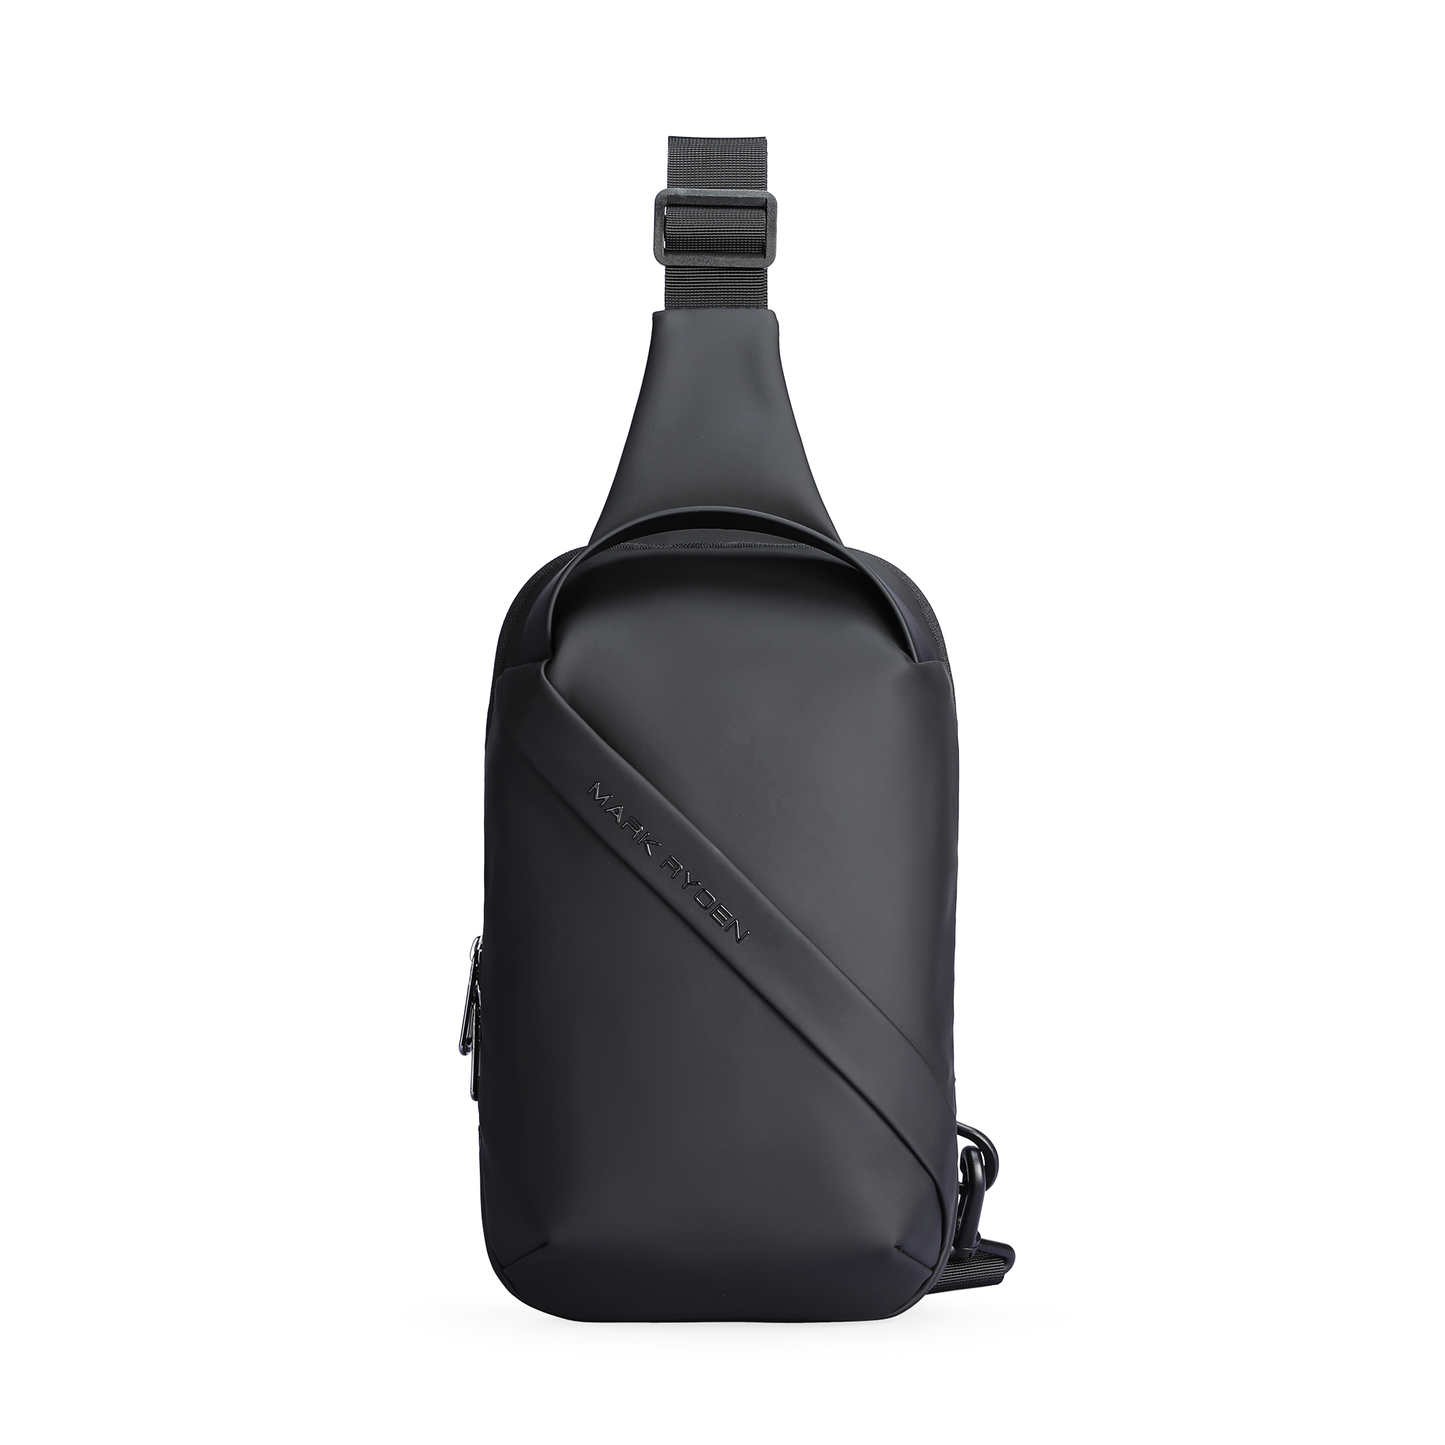 Clear: Simple Clean Waterproof Large Capacity Crossbody Bag